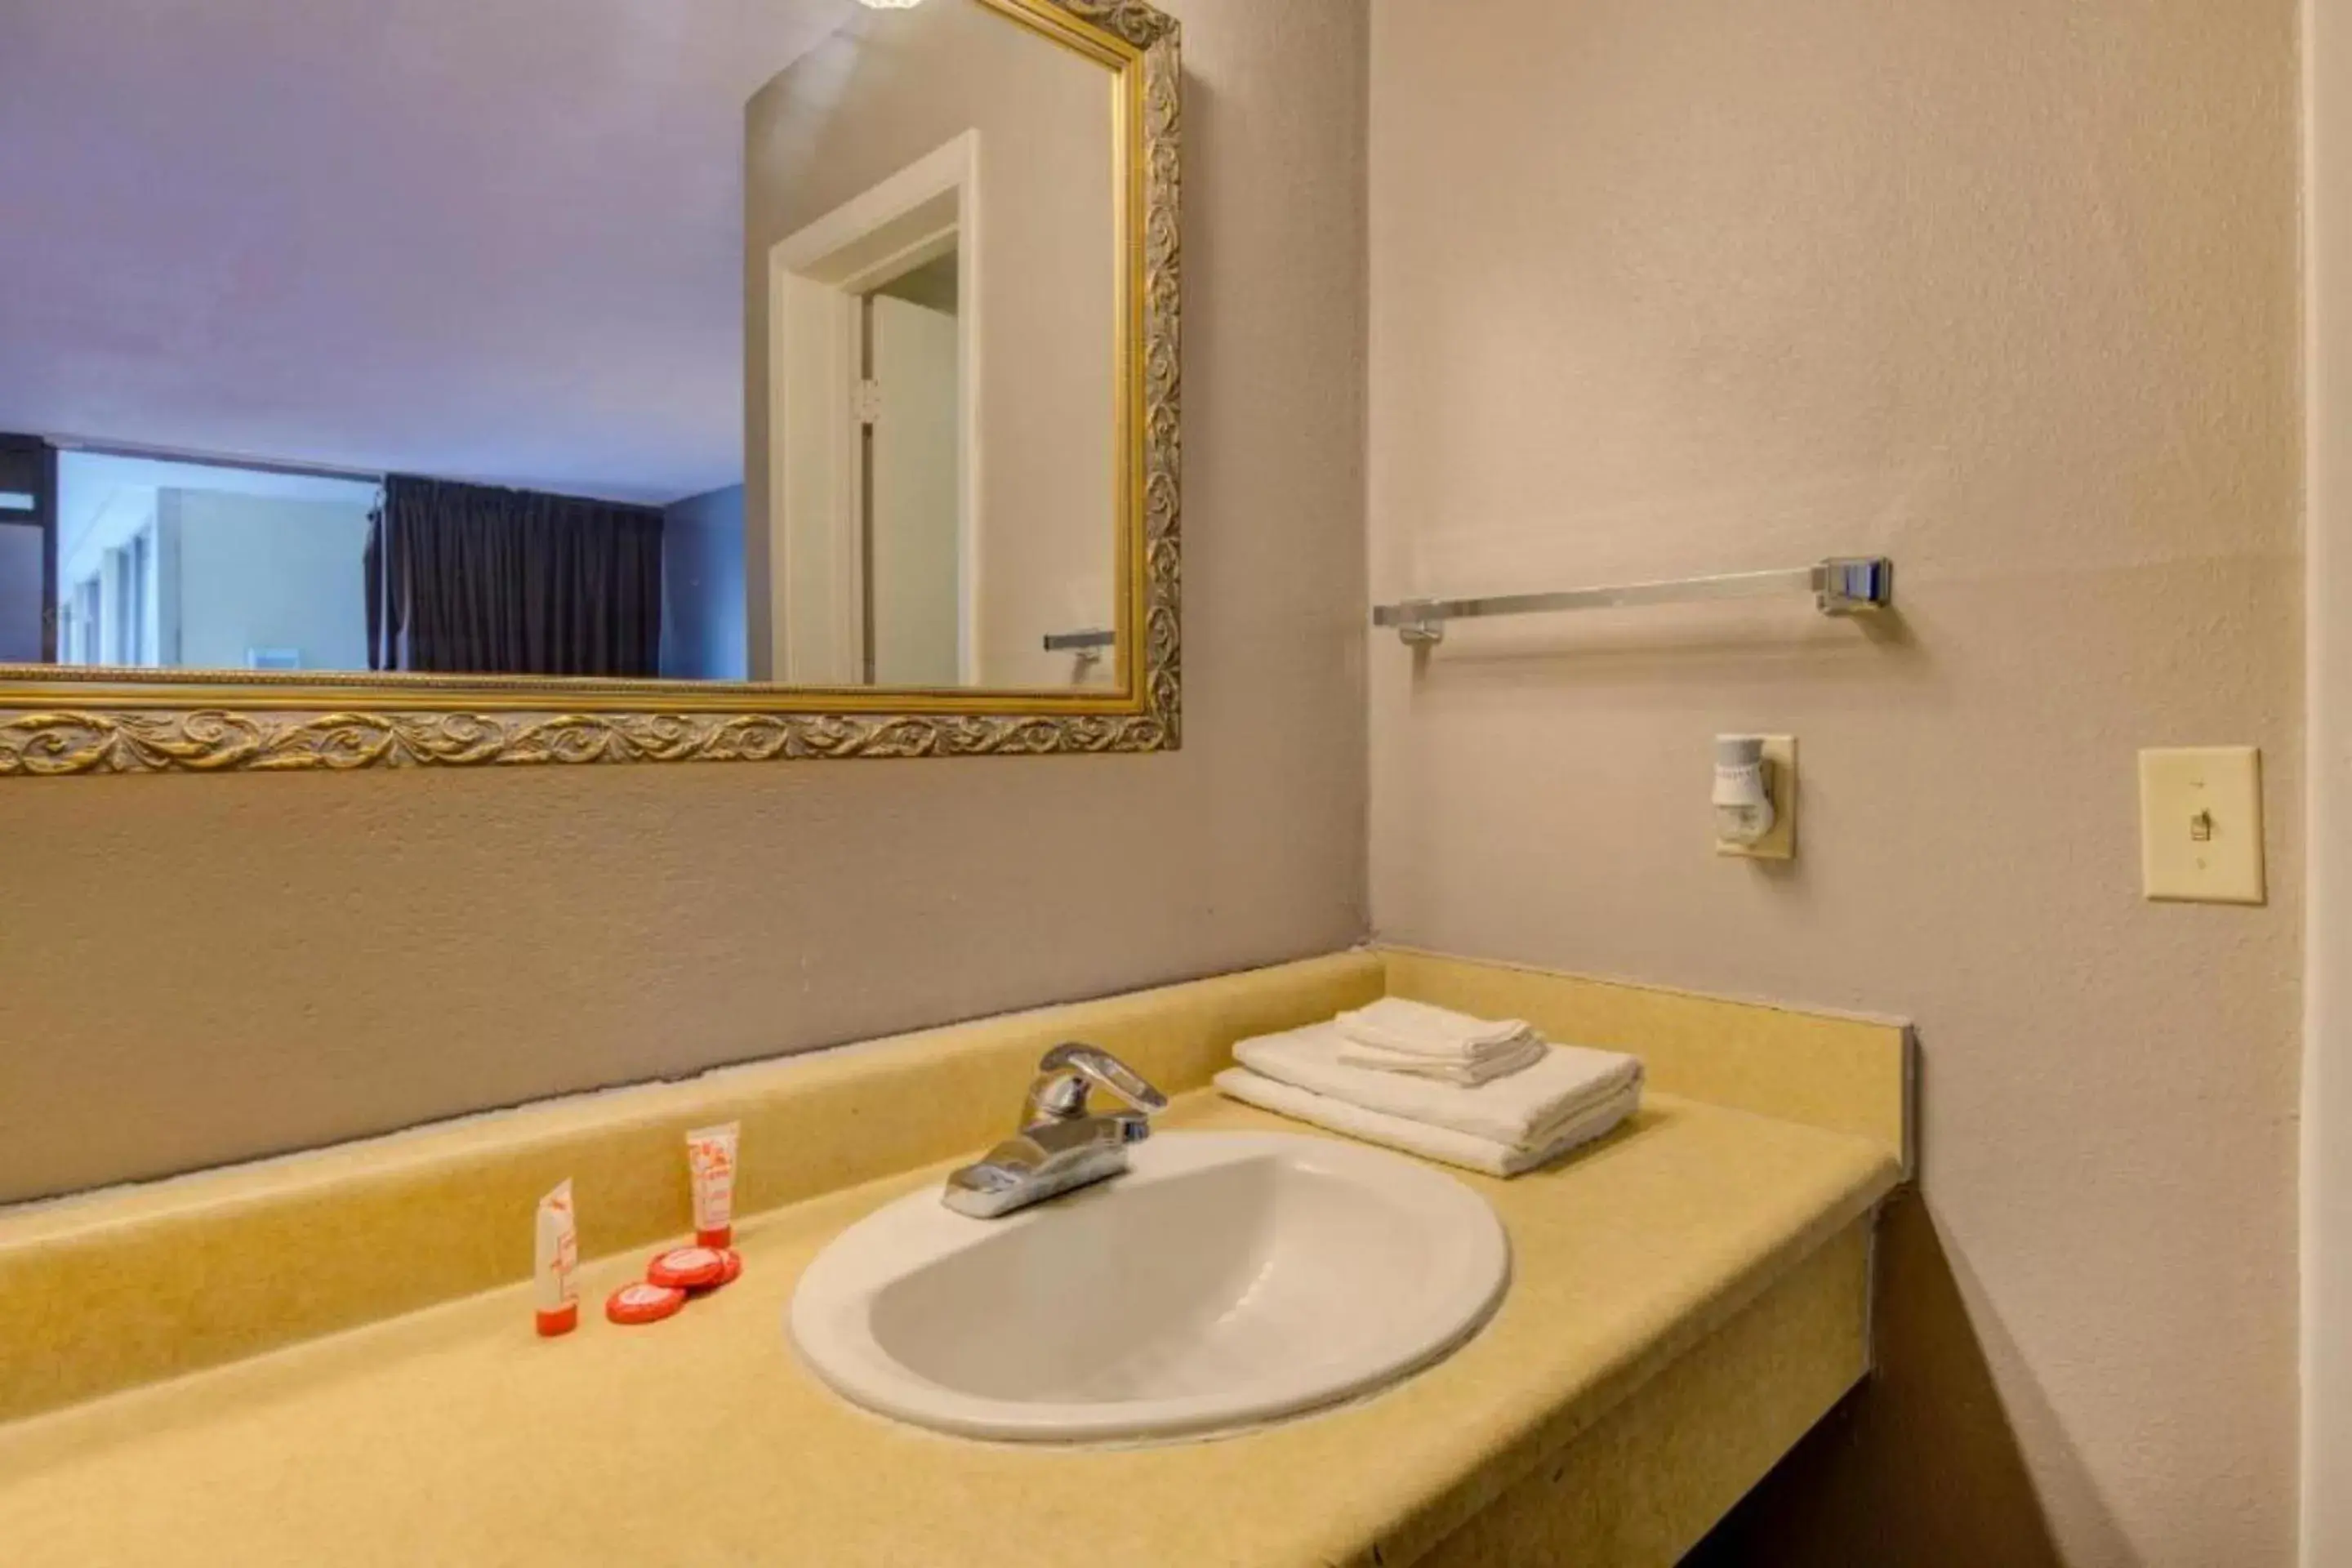 Bathroom in OYO Hotel Douglas GA US-441